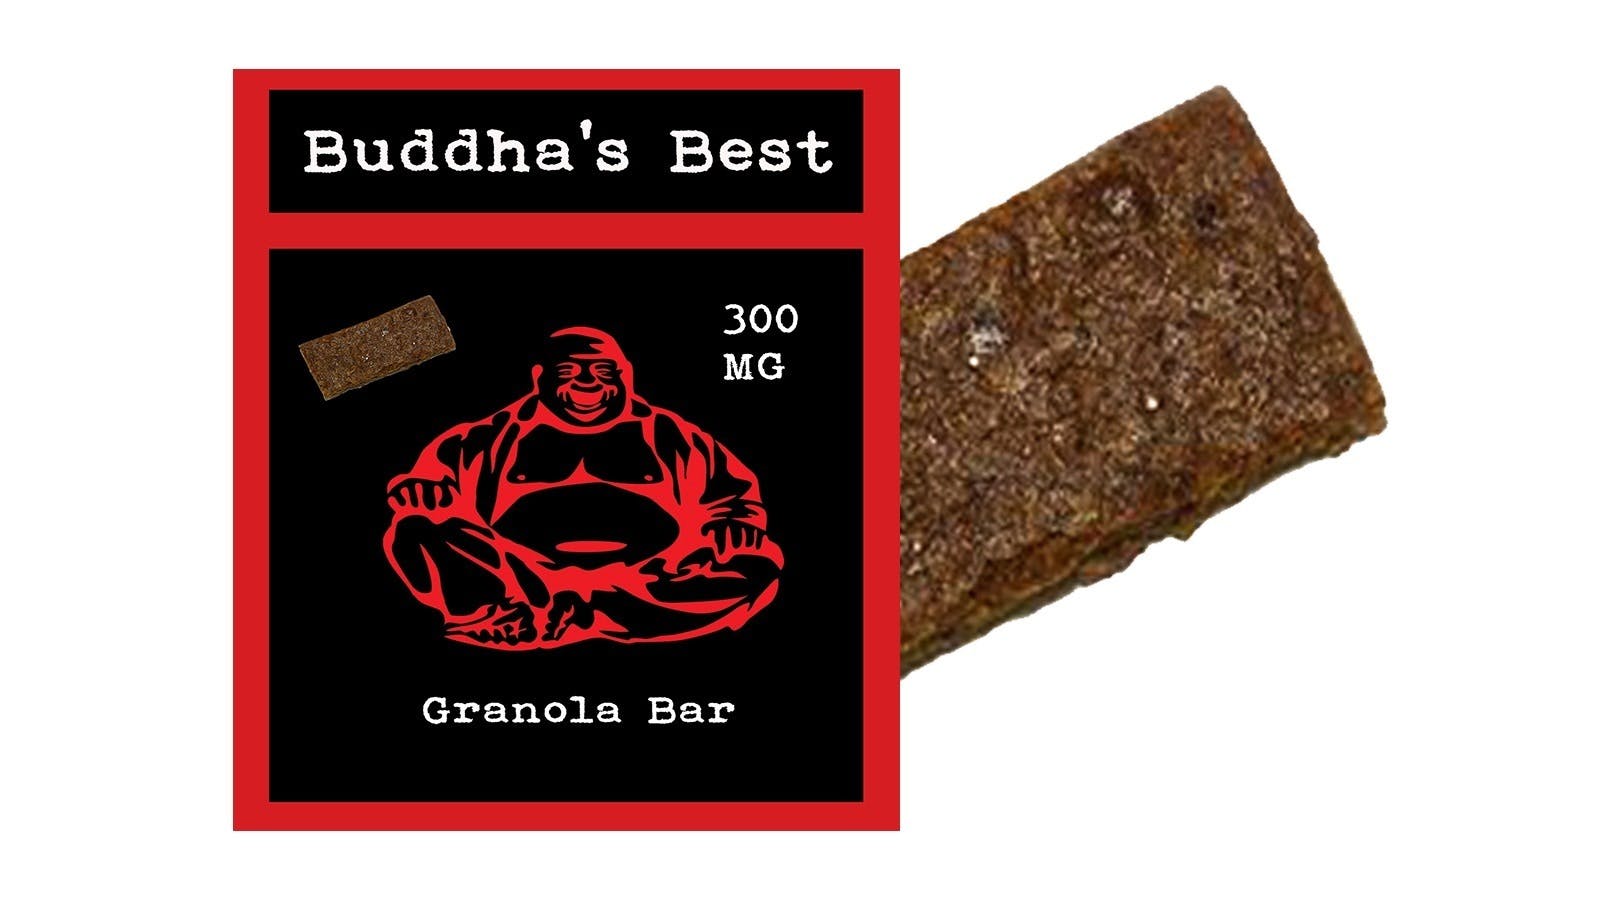 marijuana-dispensaries-gtr-noho-in-north-hollywood-buddhas-best-chocolate-raisin-300mg